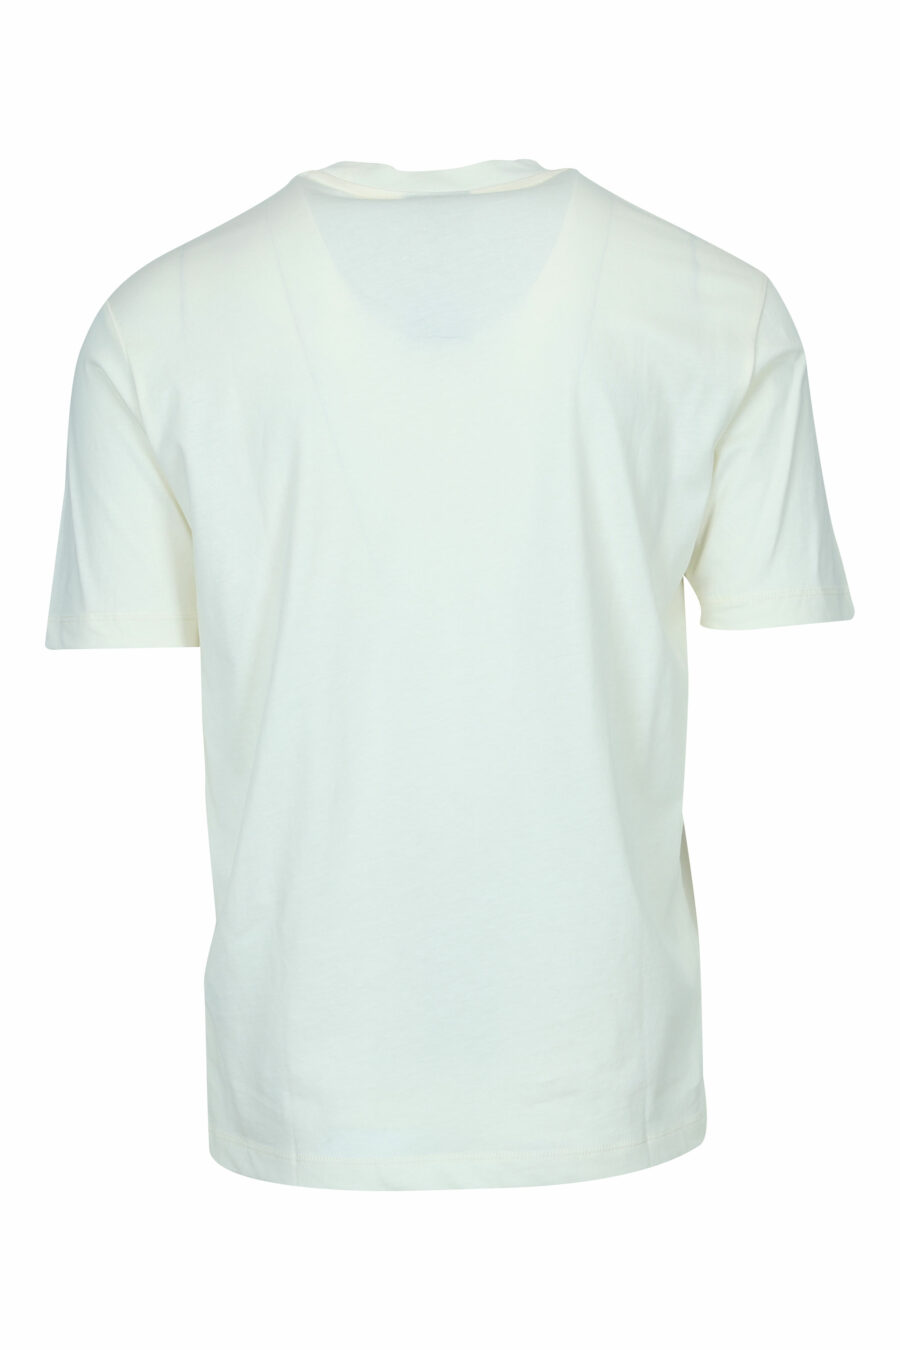 T-shirt crème avec maxilogo "emporio" - 8058947988037 1